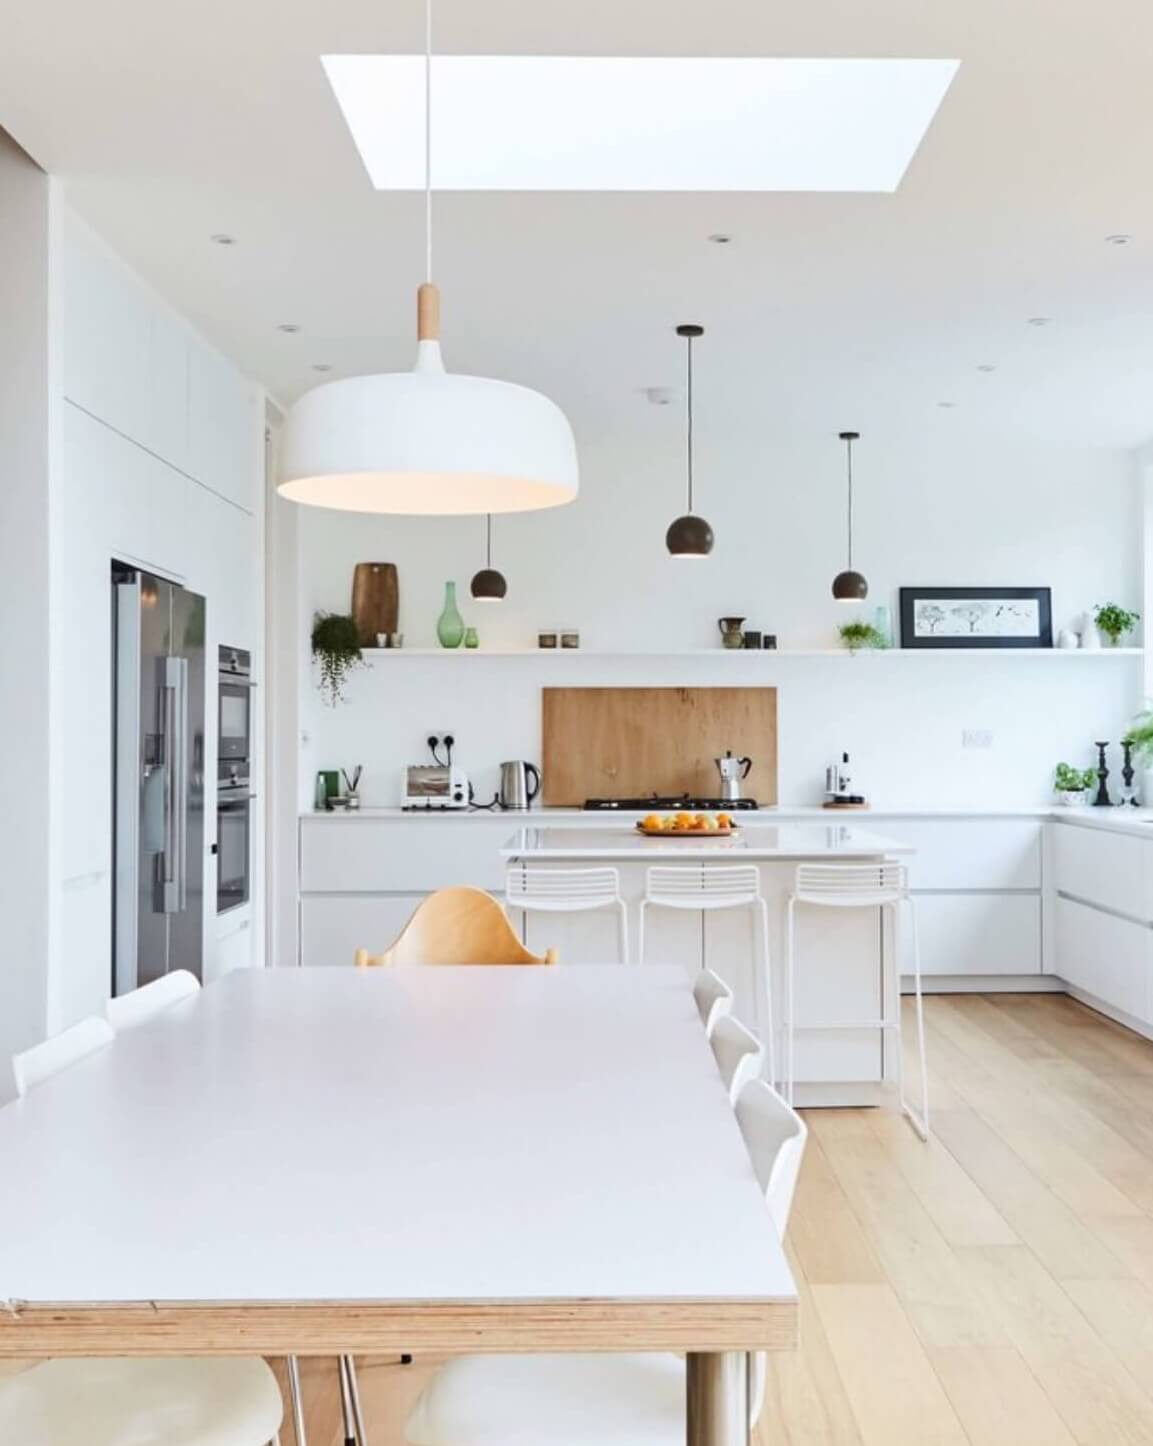 White matt handleless kitchen